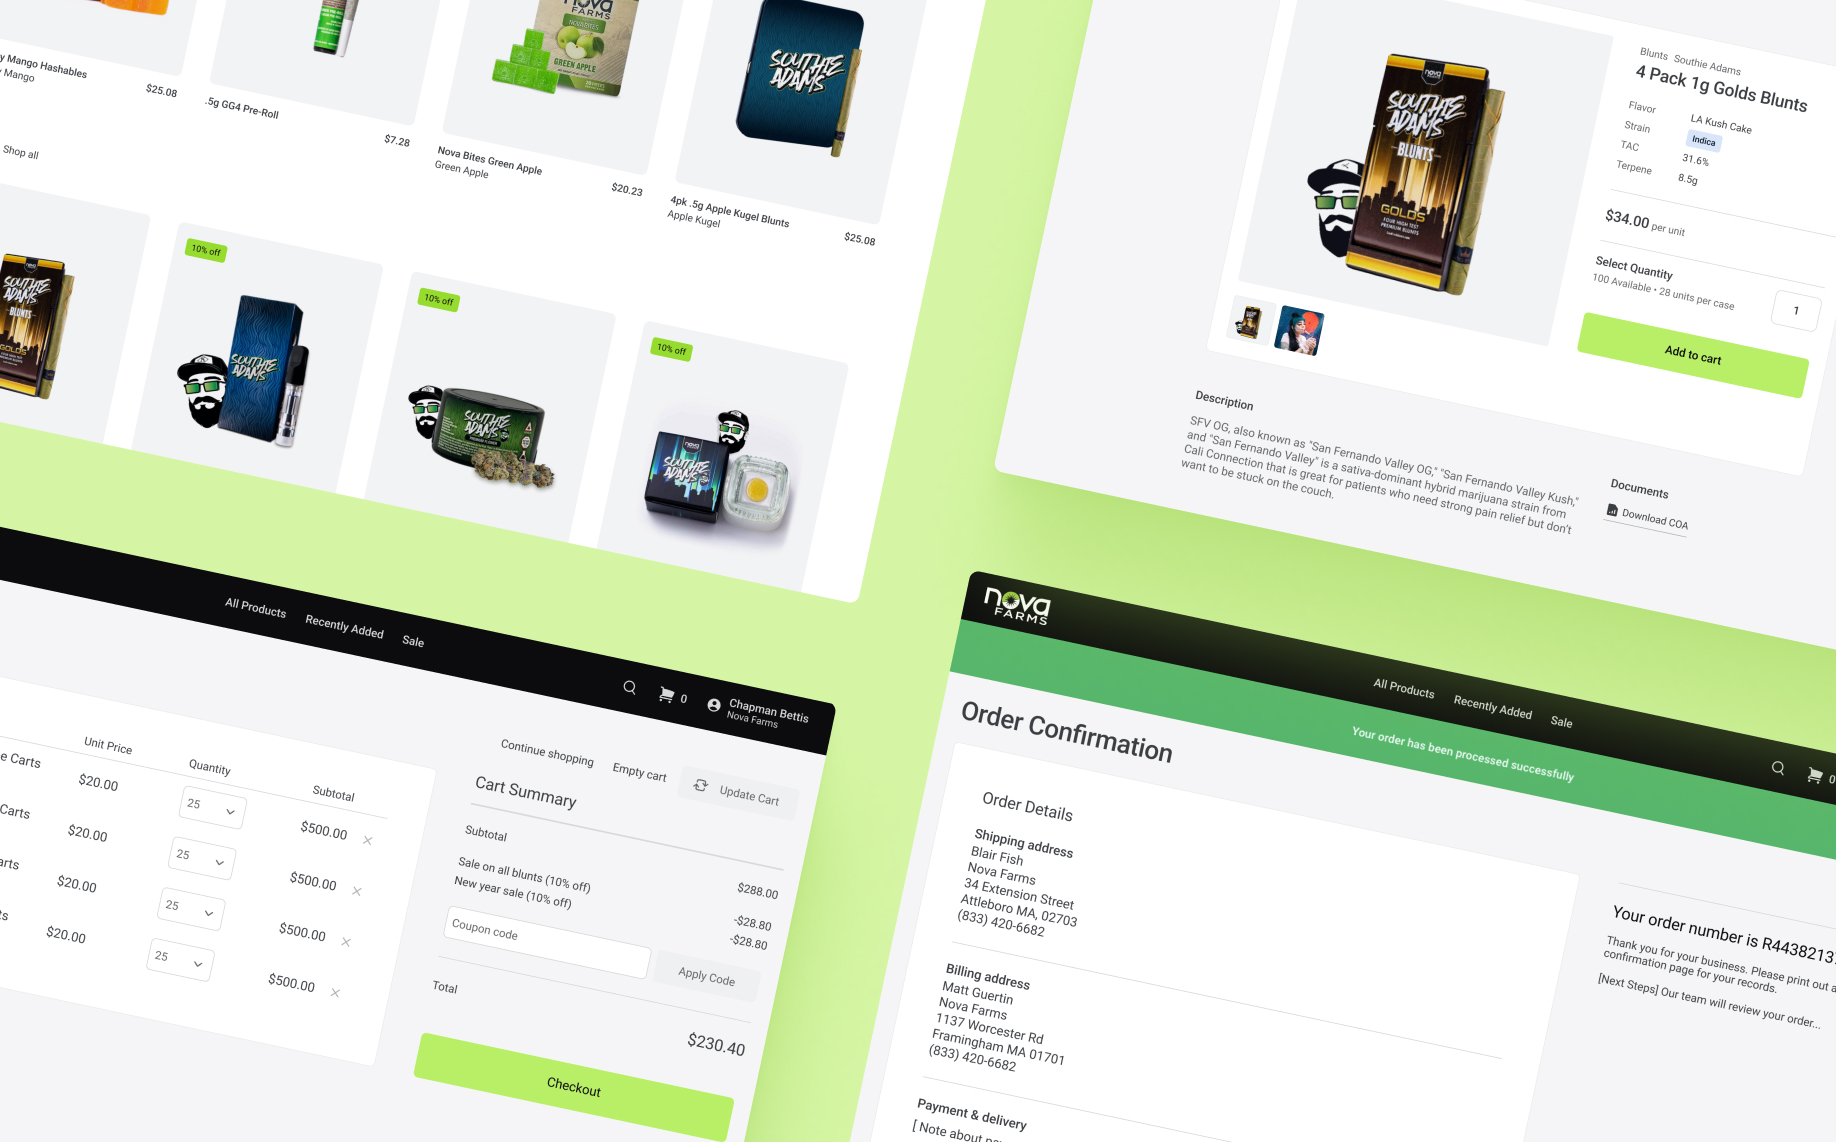 Nova Farms e-commerce site user interface collage.